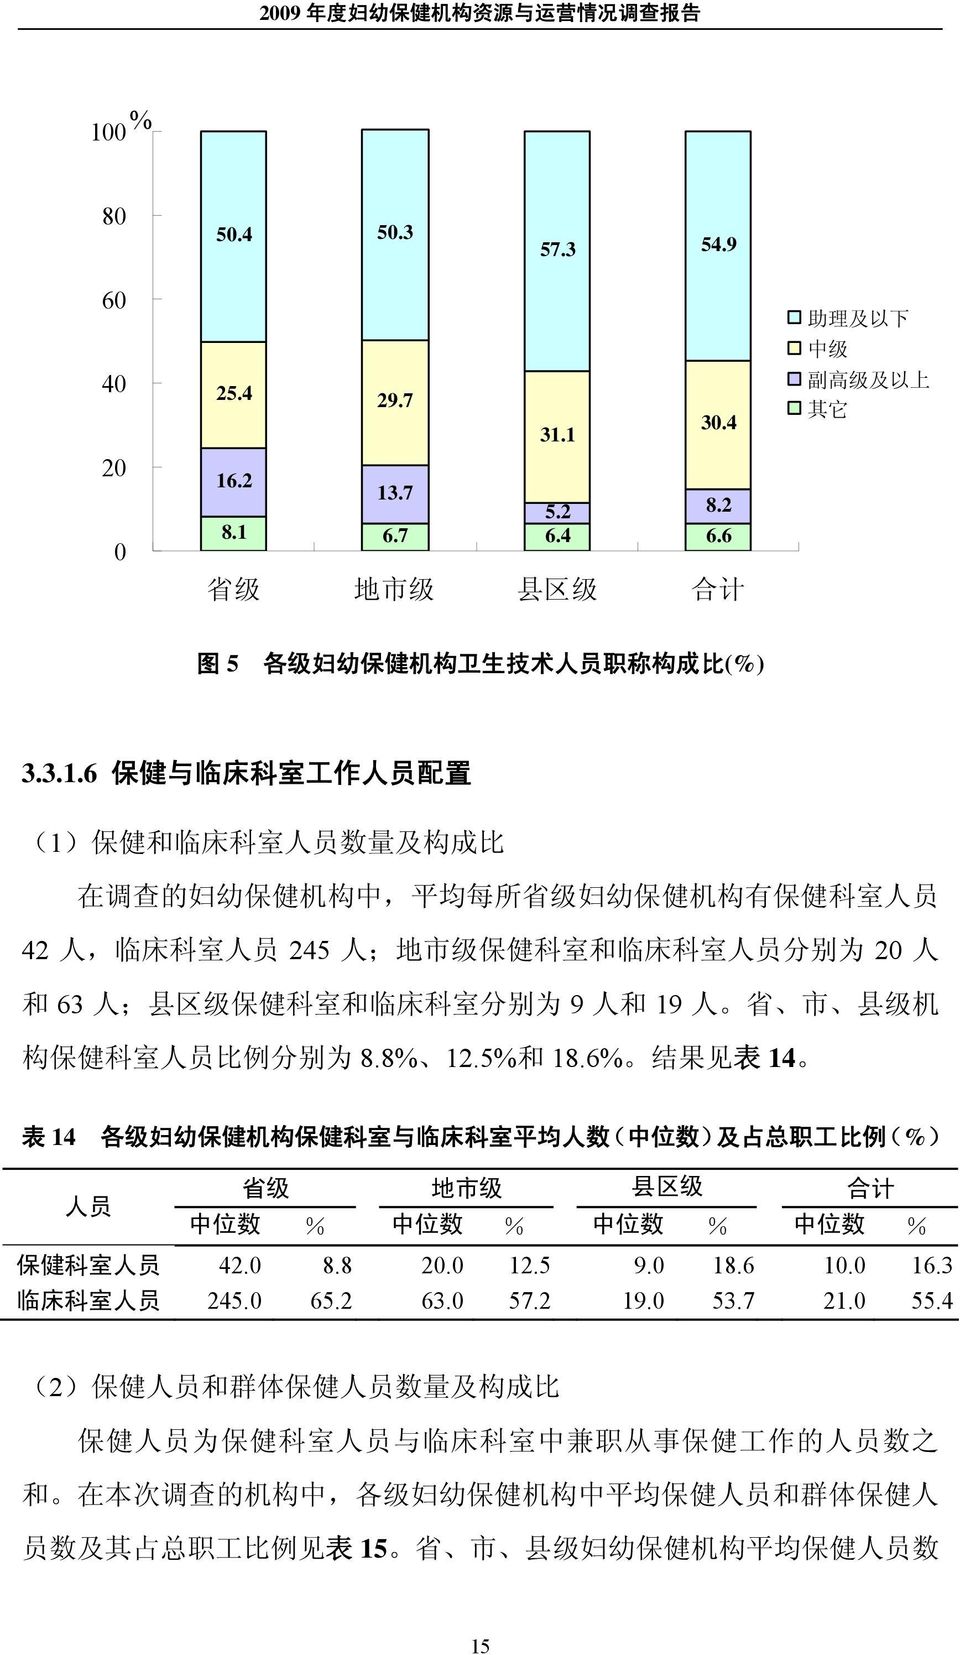 保 健 科 室 和 临 床 科 室 分 别 为 9 人 和 19 人 省 市 县 级 机 构 保 健 科 室 人 员 比 例 分 别 为 8.8% 12.5% 和 18.